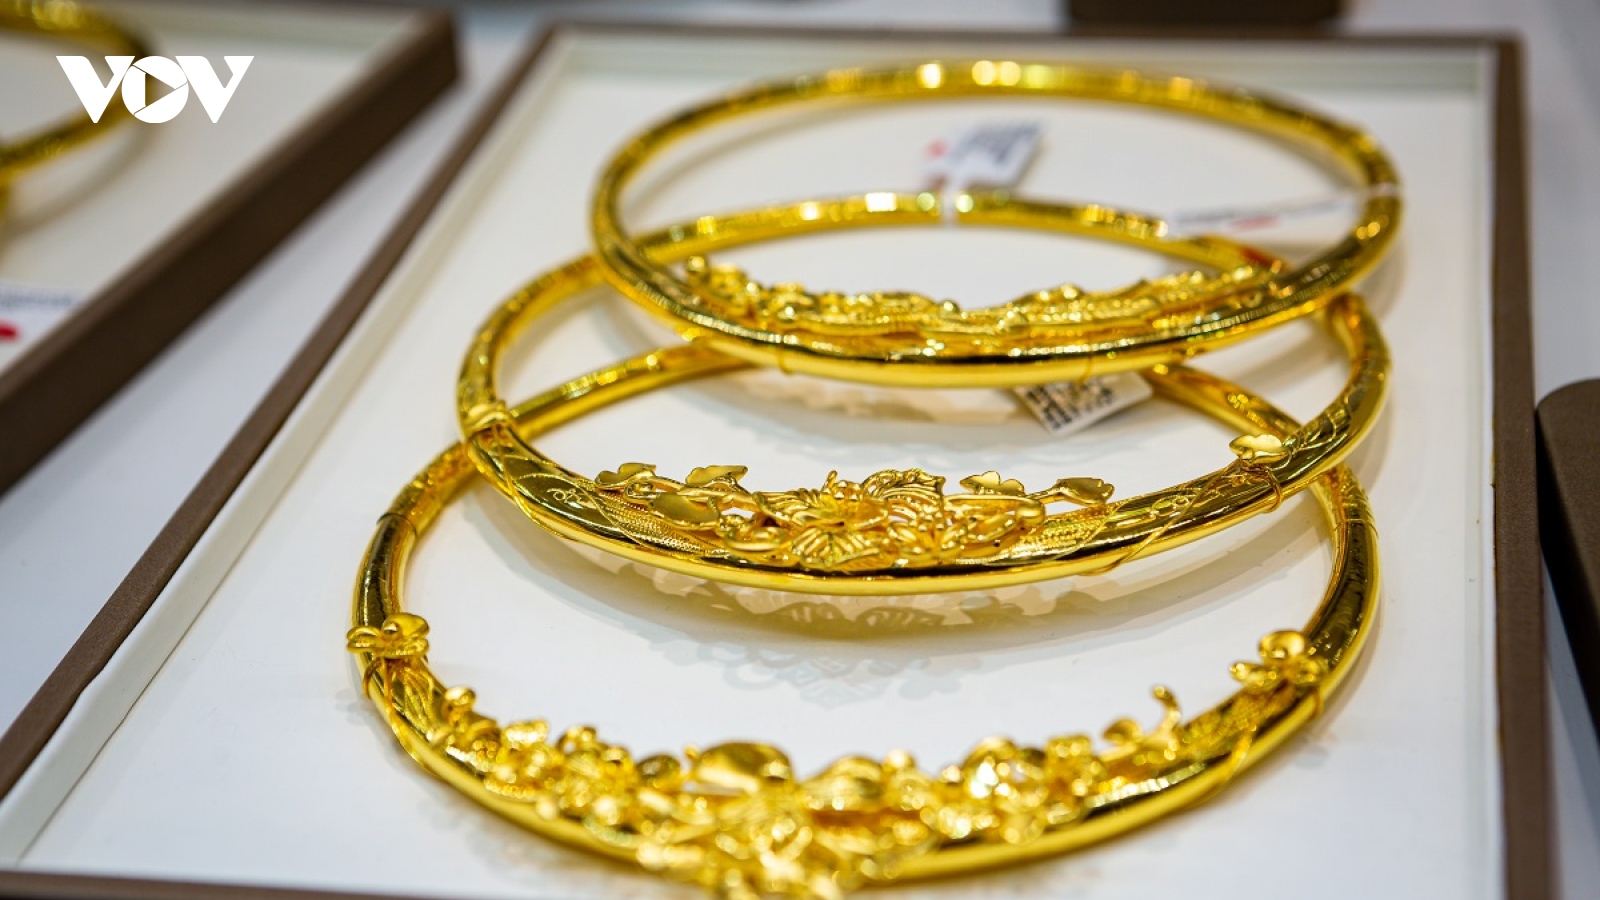 Giá vàng trong nước đi ngang, cao hơn giá vàng thế giới 12,37 triệu đồng/lượng